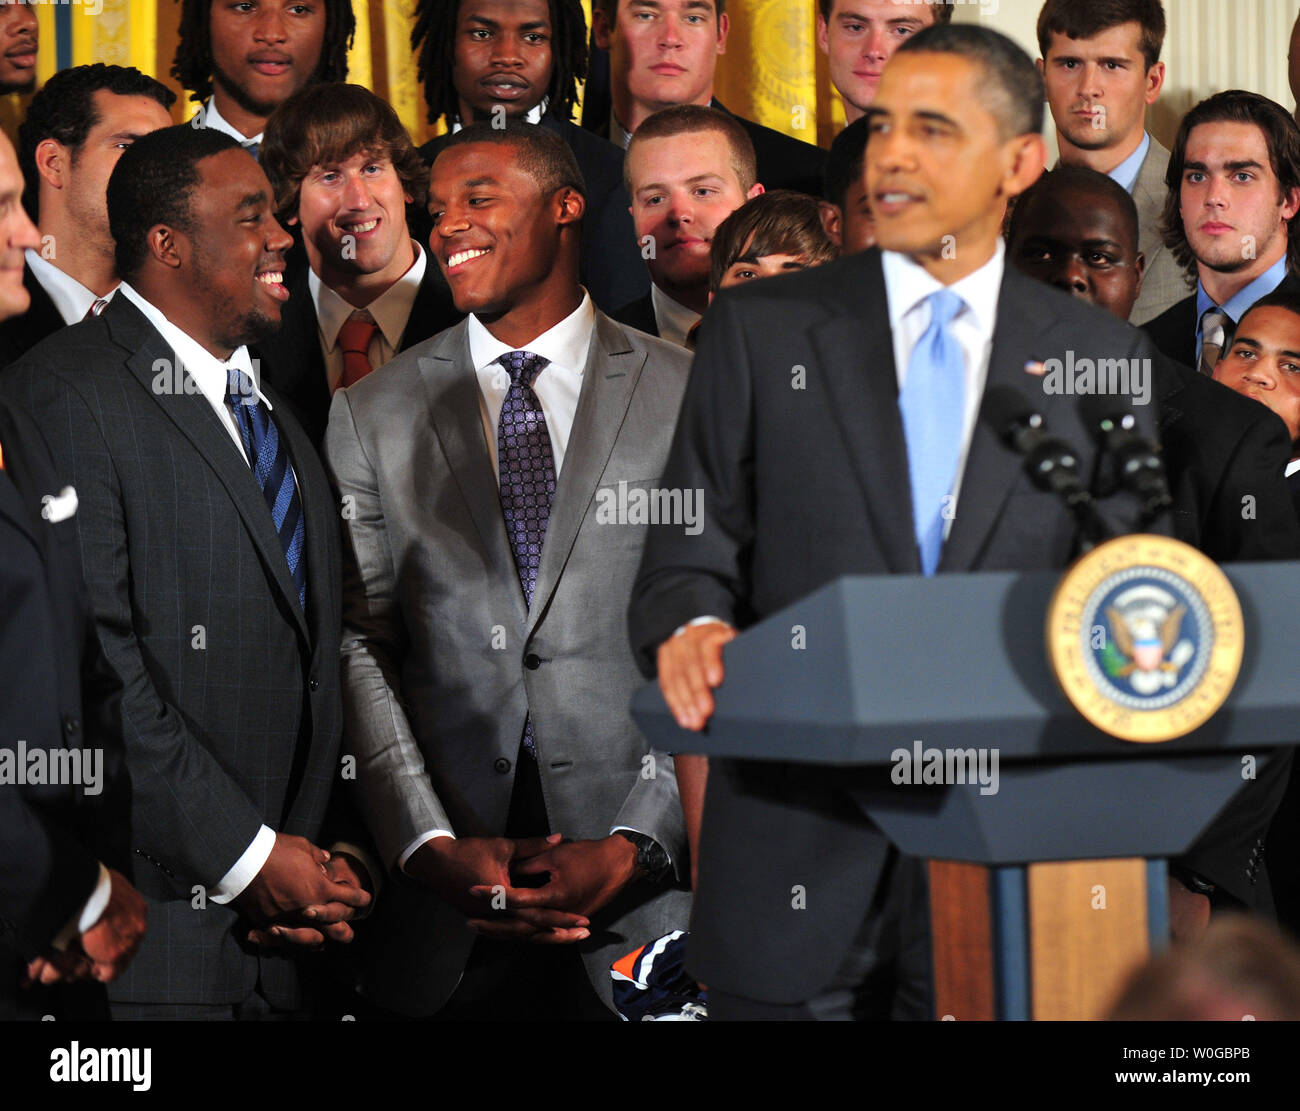 Le gagnant du Trophée Heisman Cam Newton (C) sourit comme le président Barack Obama parle de lui à une cérémonie en l'honneur du Champion NCAA 2010 Auburn Tigers dans l'Est à la Maison Blanche à Washington le 8 juin 2011. UPI/Kevin Dietsch Banque D'Images